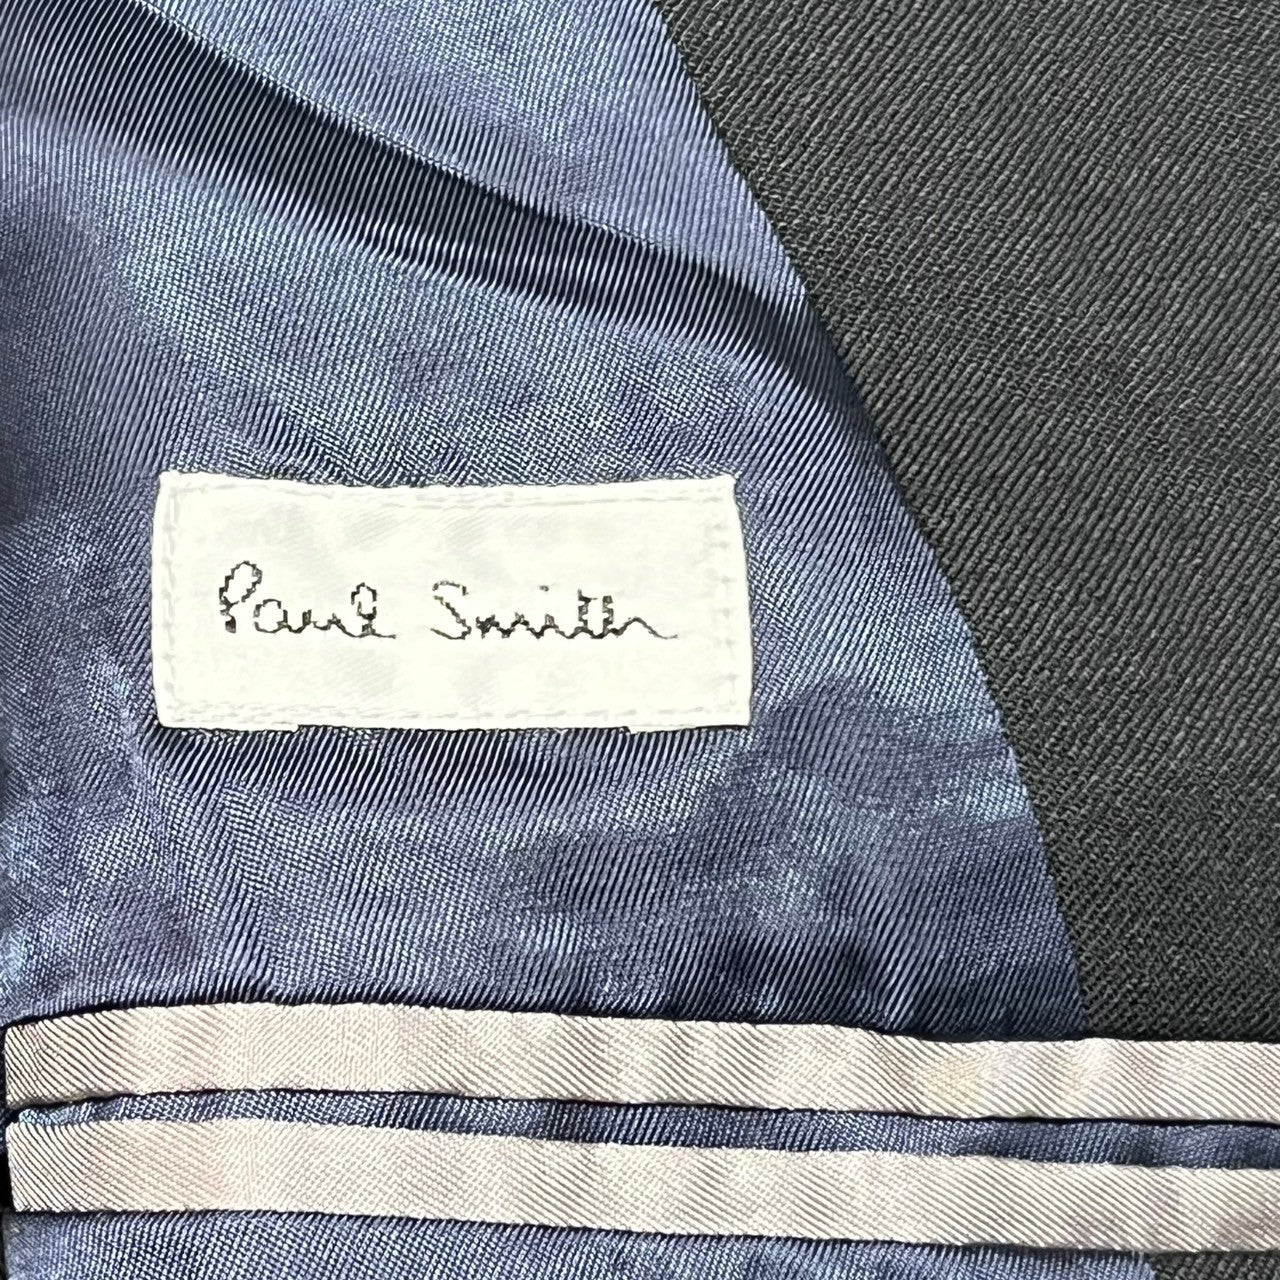 PAUL SMITH(ポールスミス) zip up jacket ジップアップ ジャケット ブルゾン PM-KS-40361 SIZE M ブラック